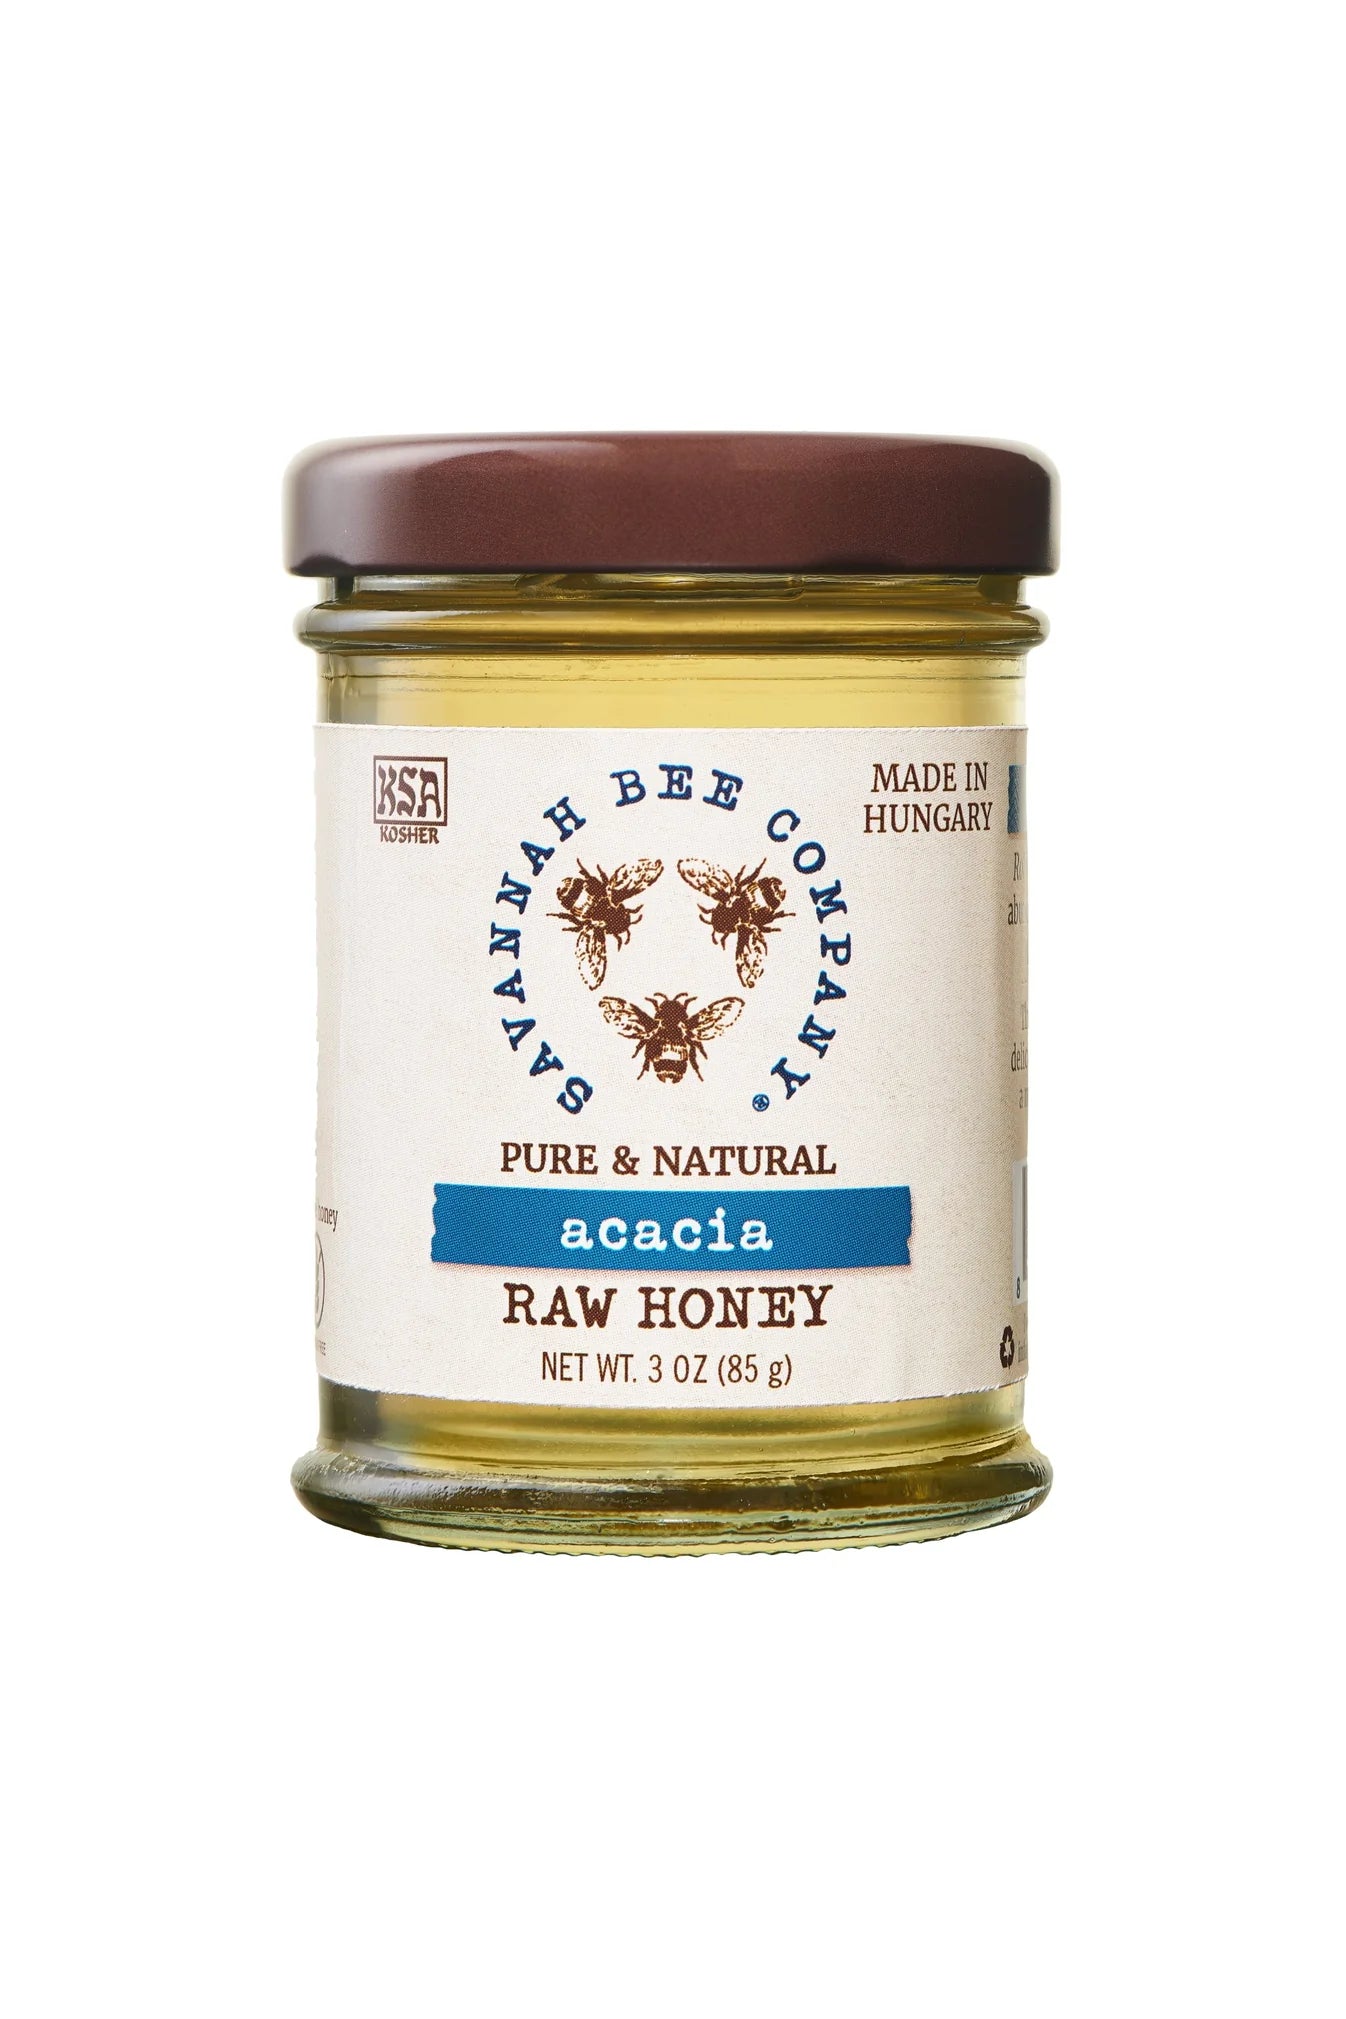 Acacia Honey - Savannah Bee Company